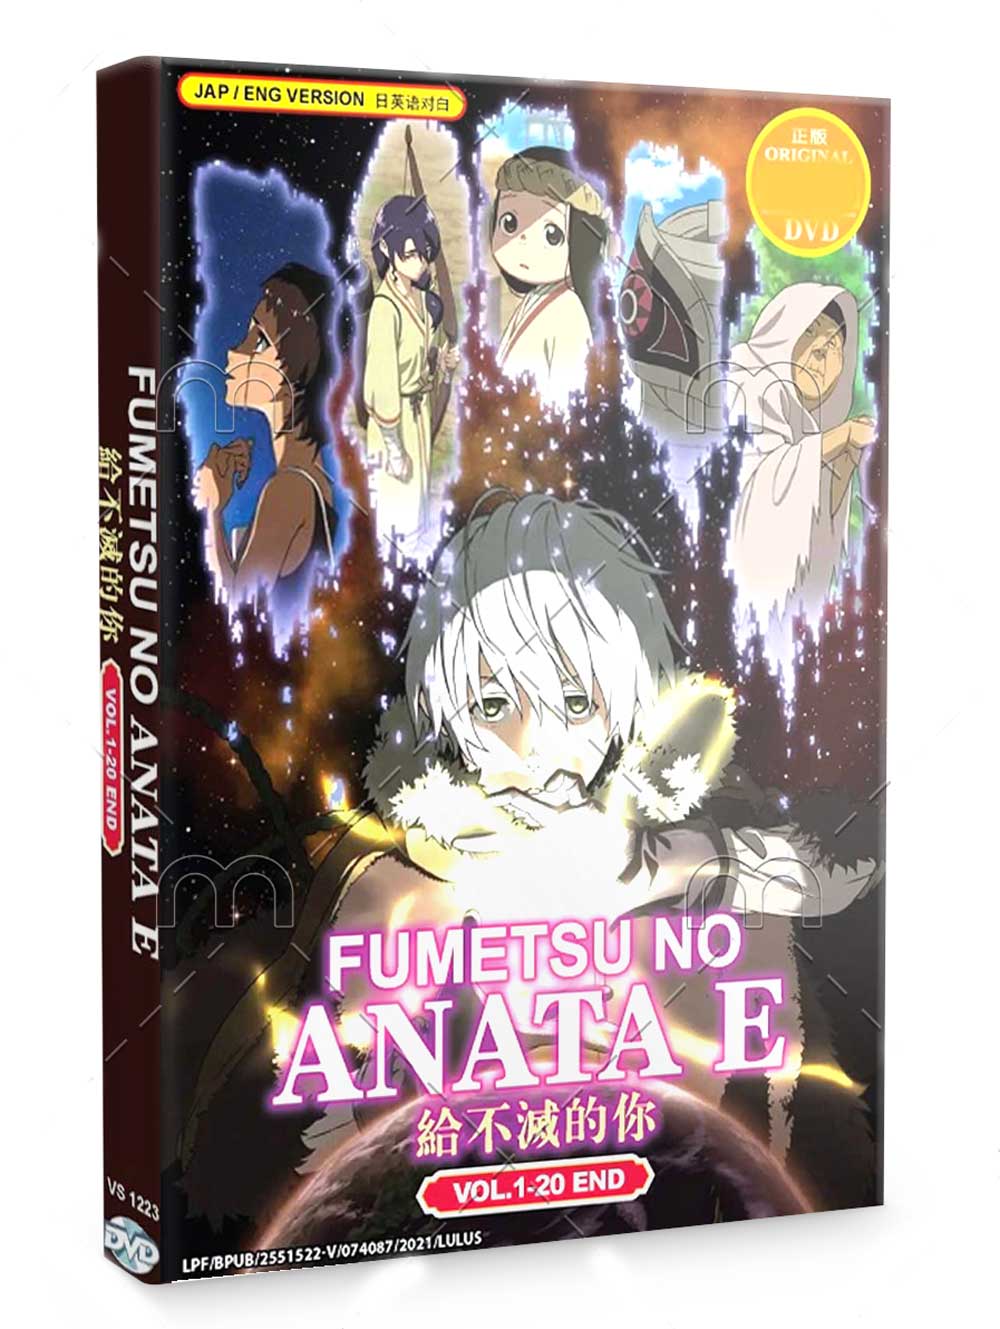 Fumetsu no Anata e (DVD) (2021) Anime